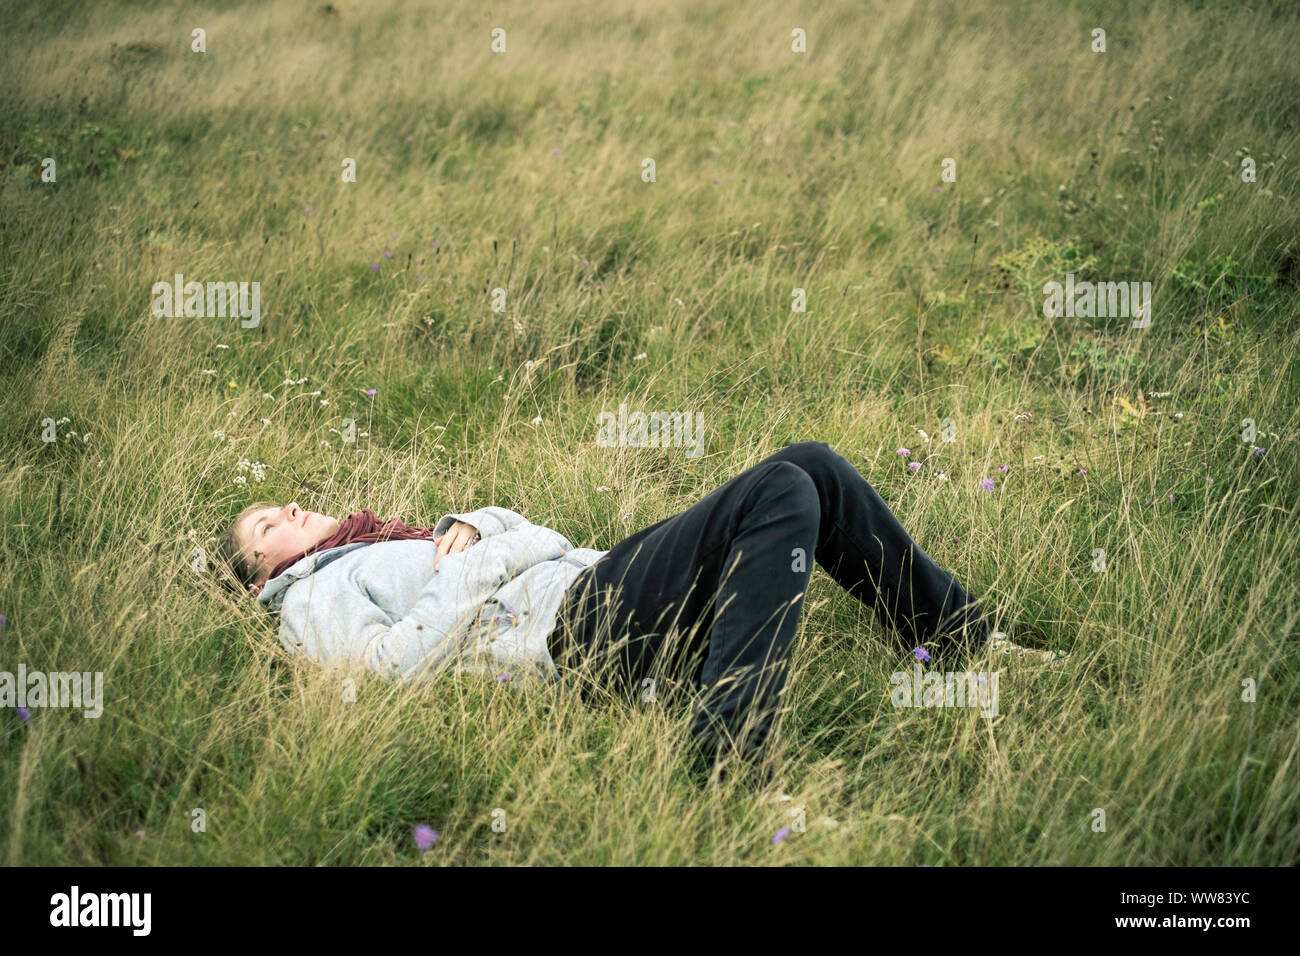 Jeune femme allongé dans l'herbe la rêverie, Dourgne, Tarn, France Banque D'Images